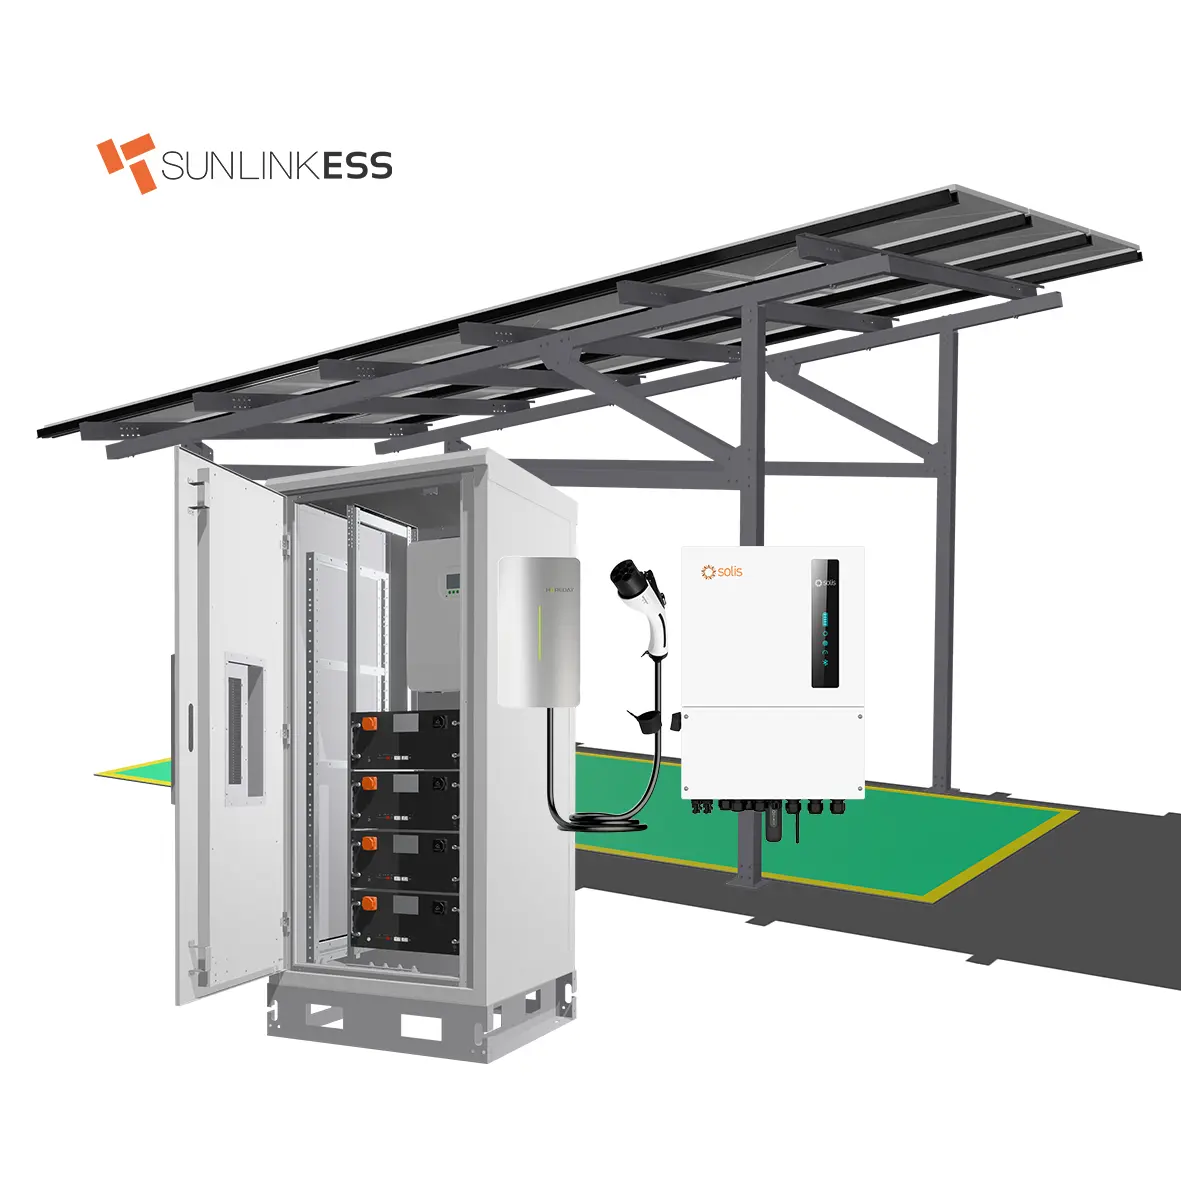 Sunlink-ESS Solar wootproof Carport solar charger system for EV Car 8kw hybrid system 7kw ac ev charger